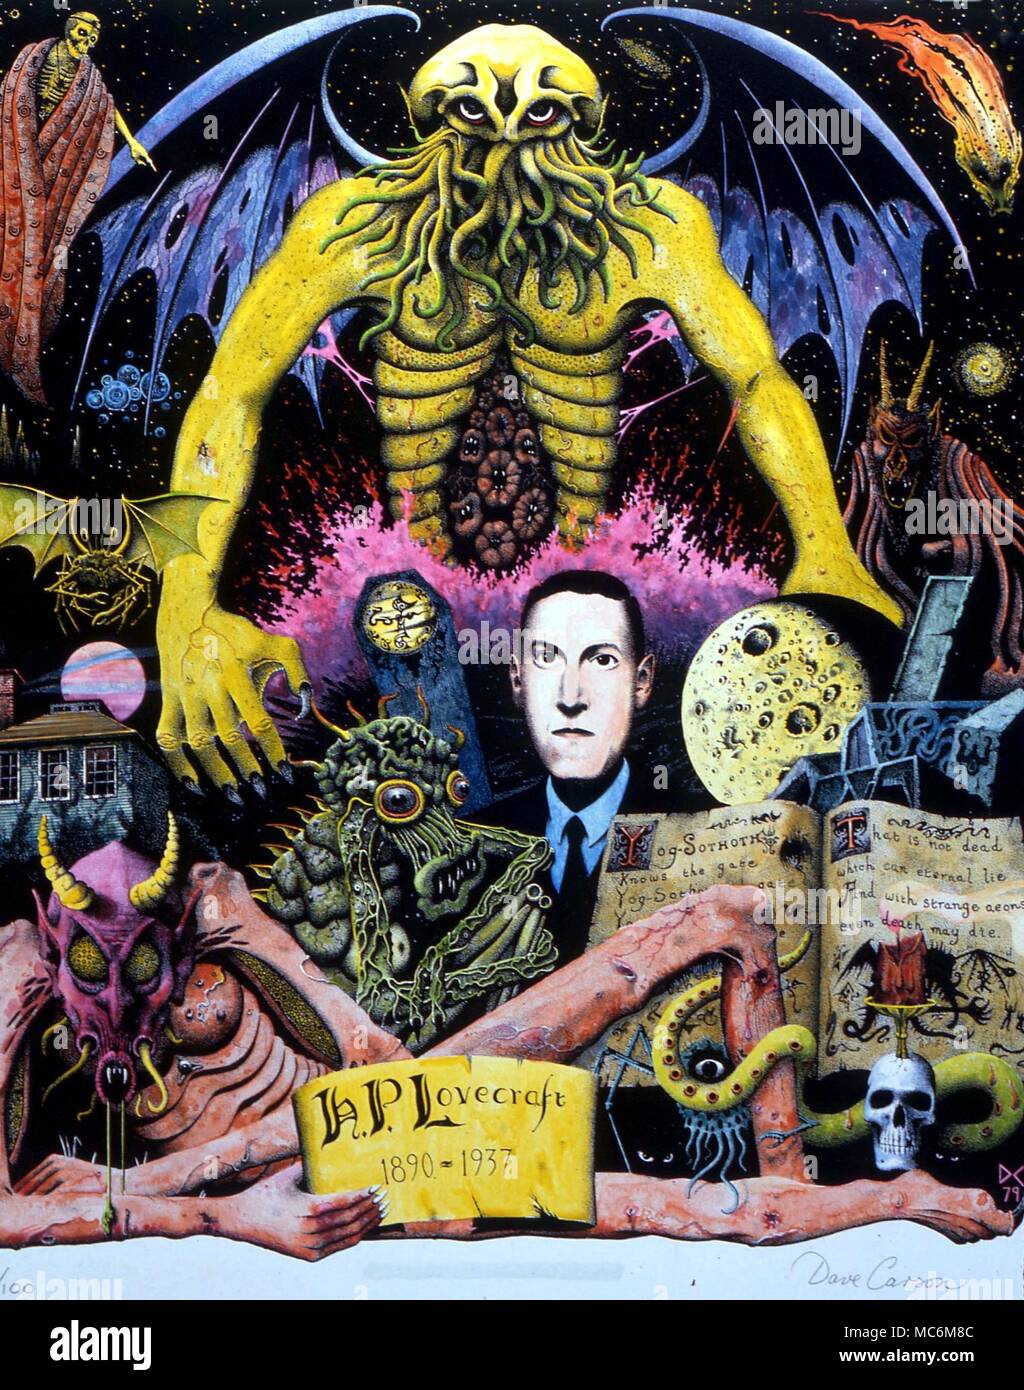 - Des monstres les monstres de Lovecraft. Portrait de l'Occultiste, poète et écrivain de contes surnaturels, Howard Phillips Lovercraft (1890-1937). ici il est représenté chez les monstres de sa propre création. Photo par David Carson. Droits de reproduction avec CW Banque D'Images